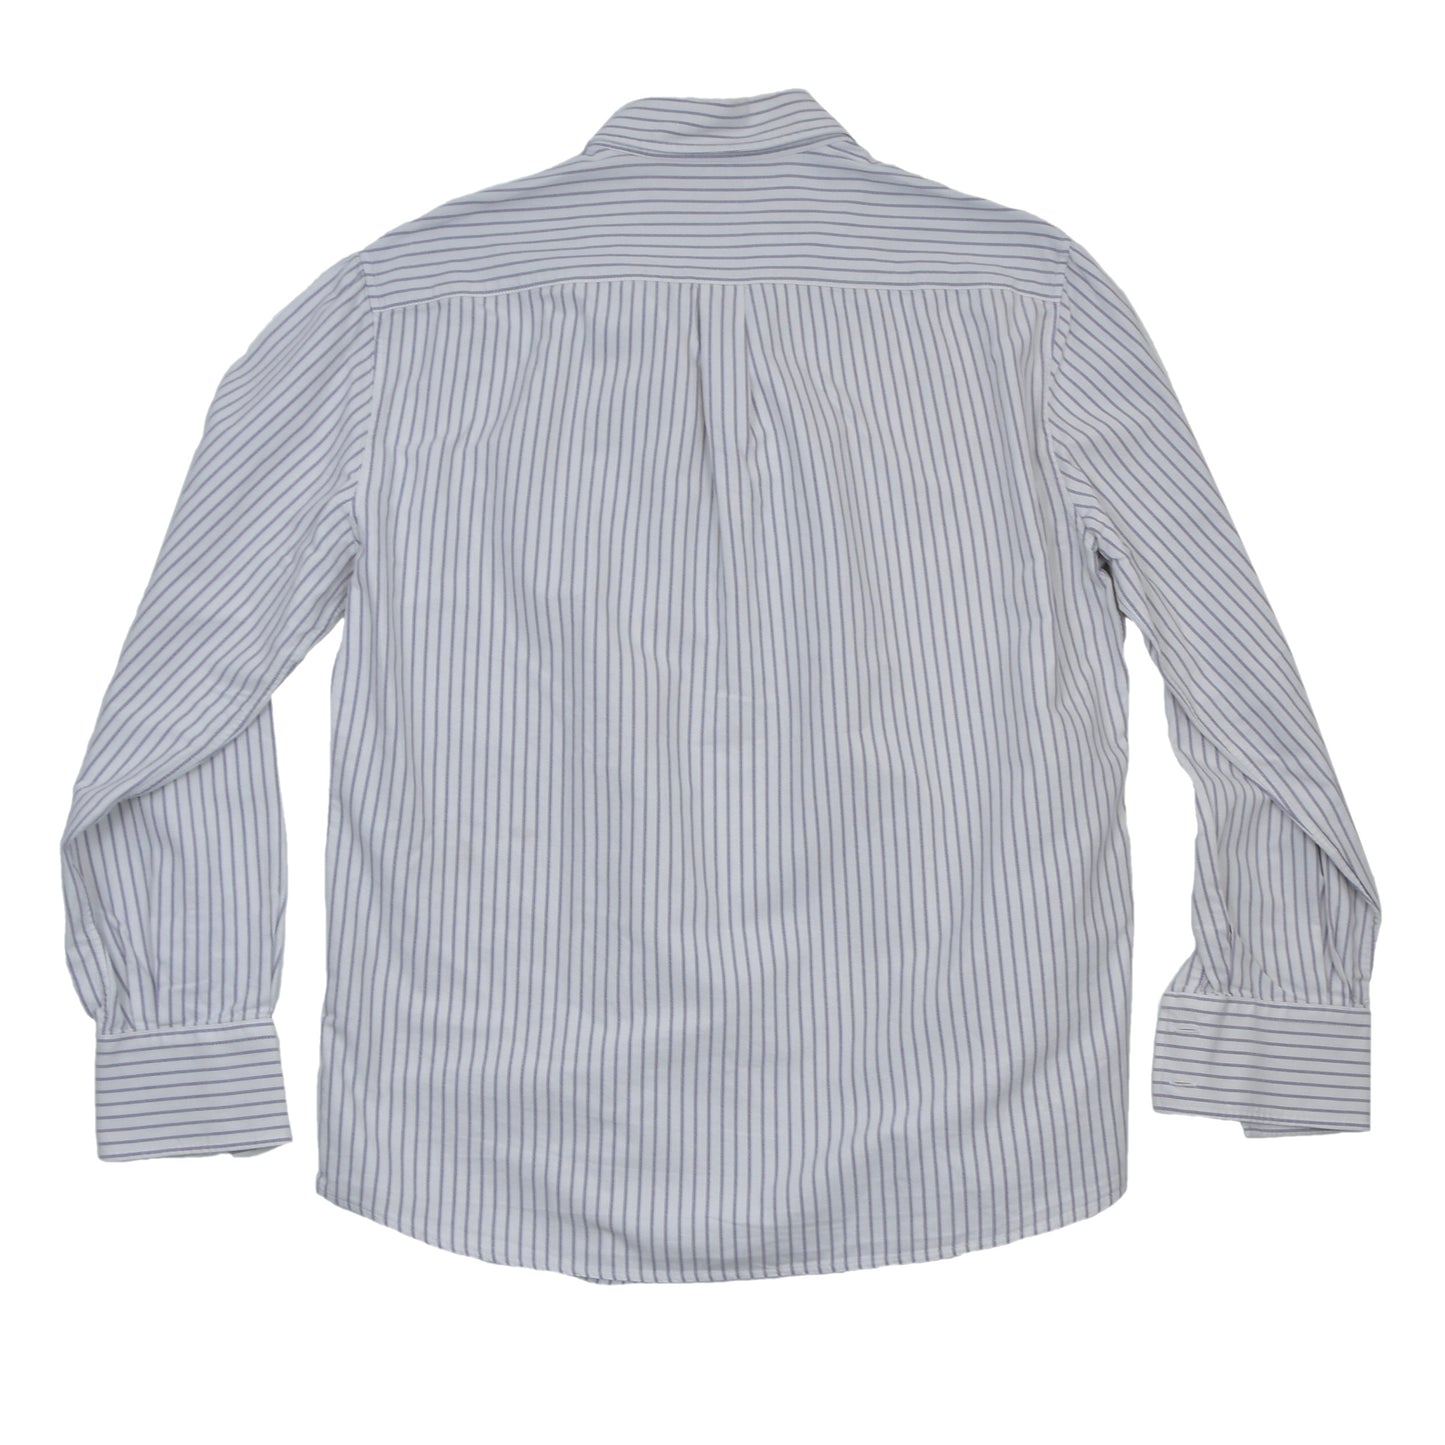 Brunello Cucinelli Shirt Size L Basic Fit - Stripes